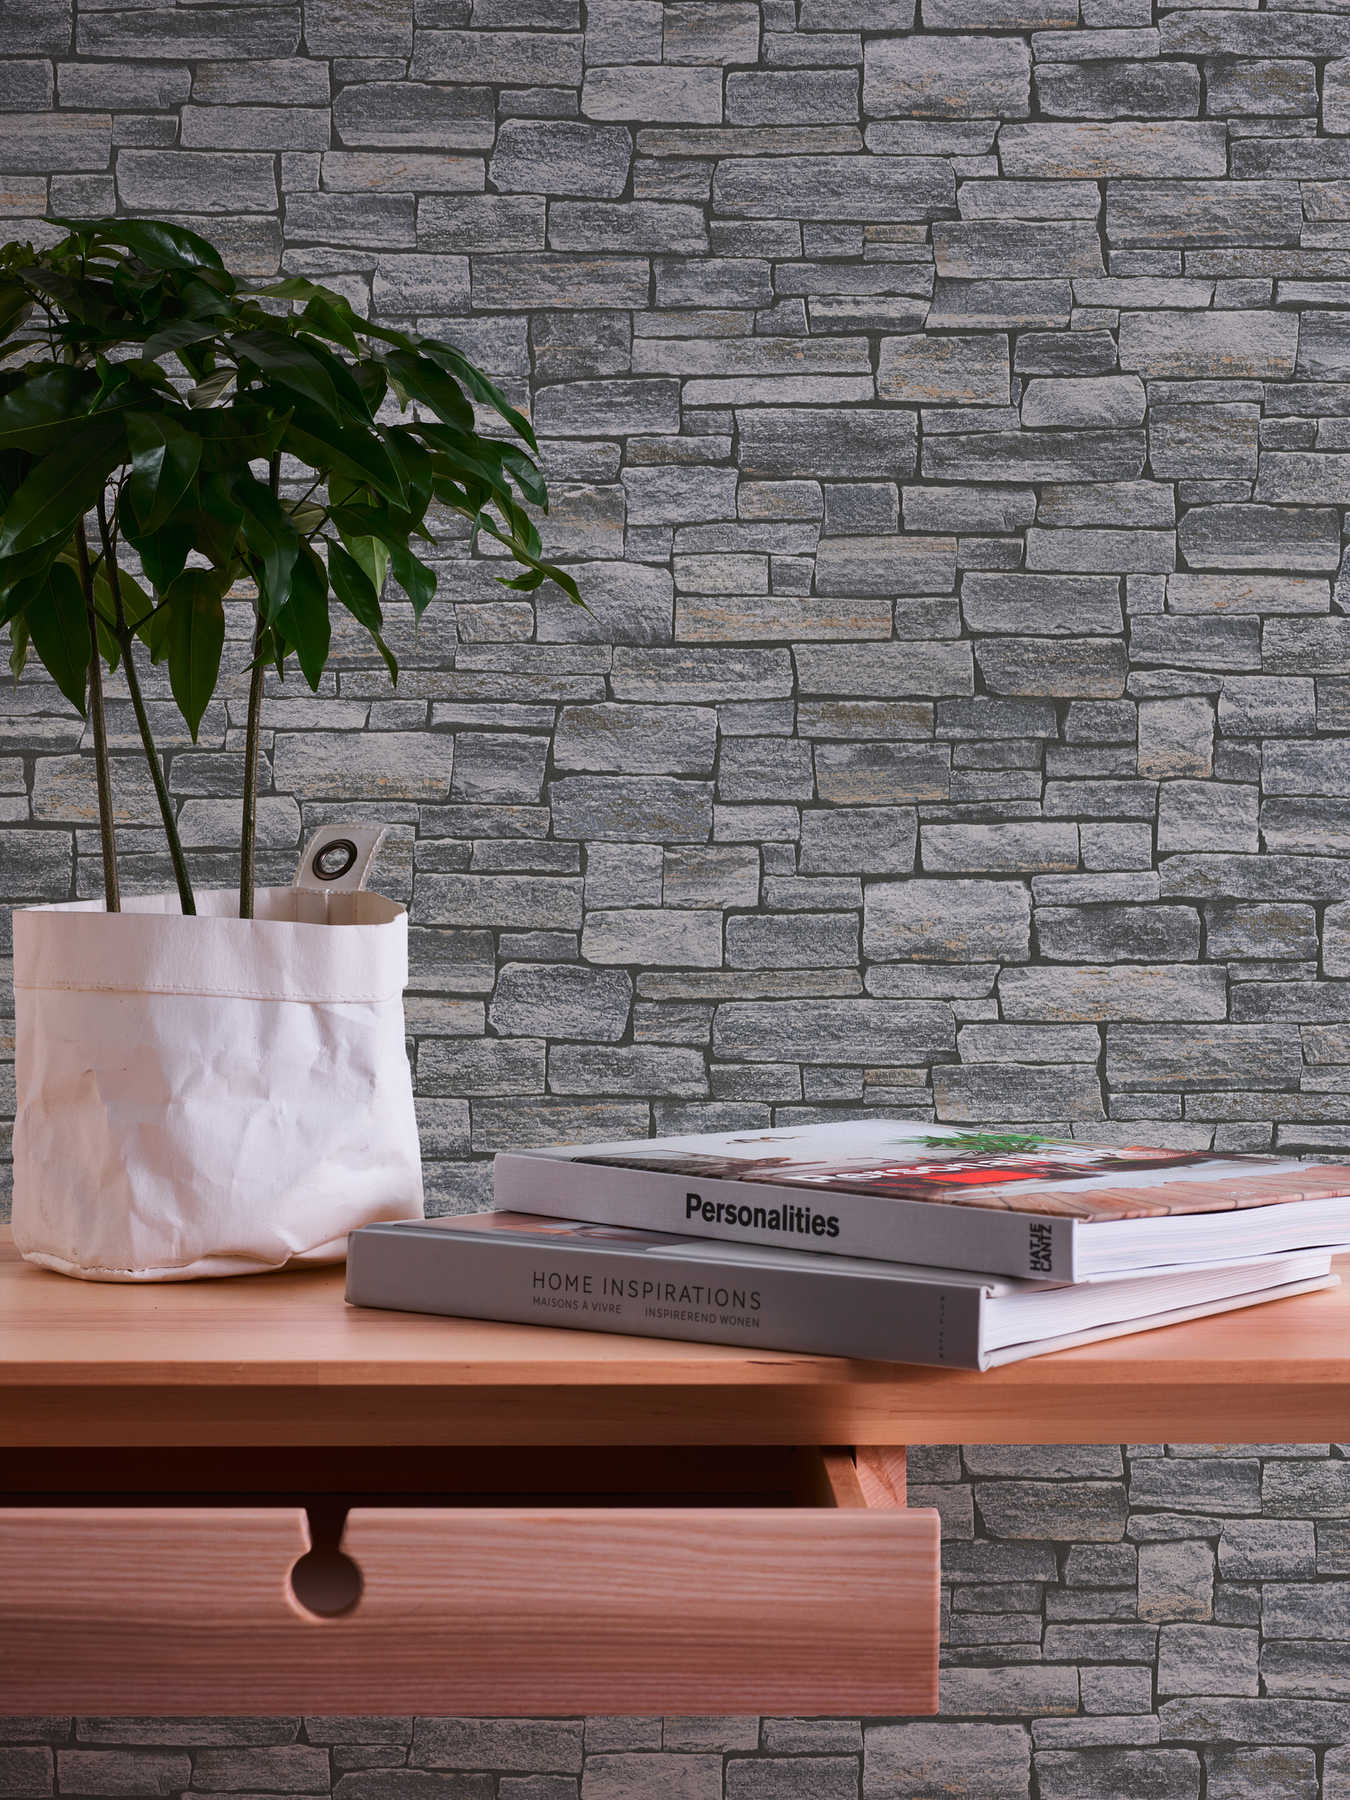             Papier peint imitation pierre & motif de mur naturel - gris, noir, marron
        